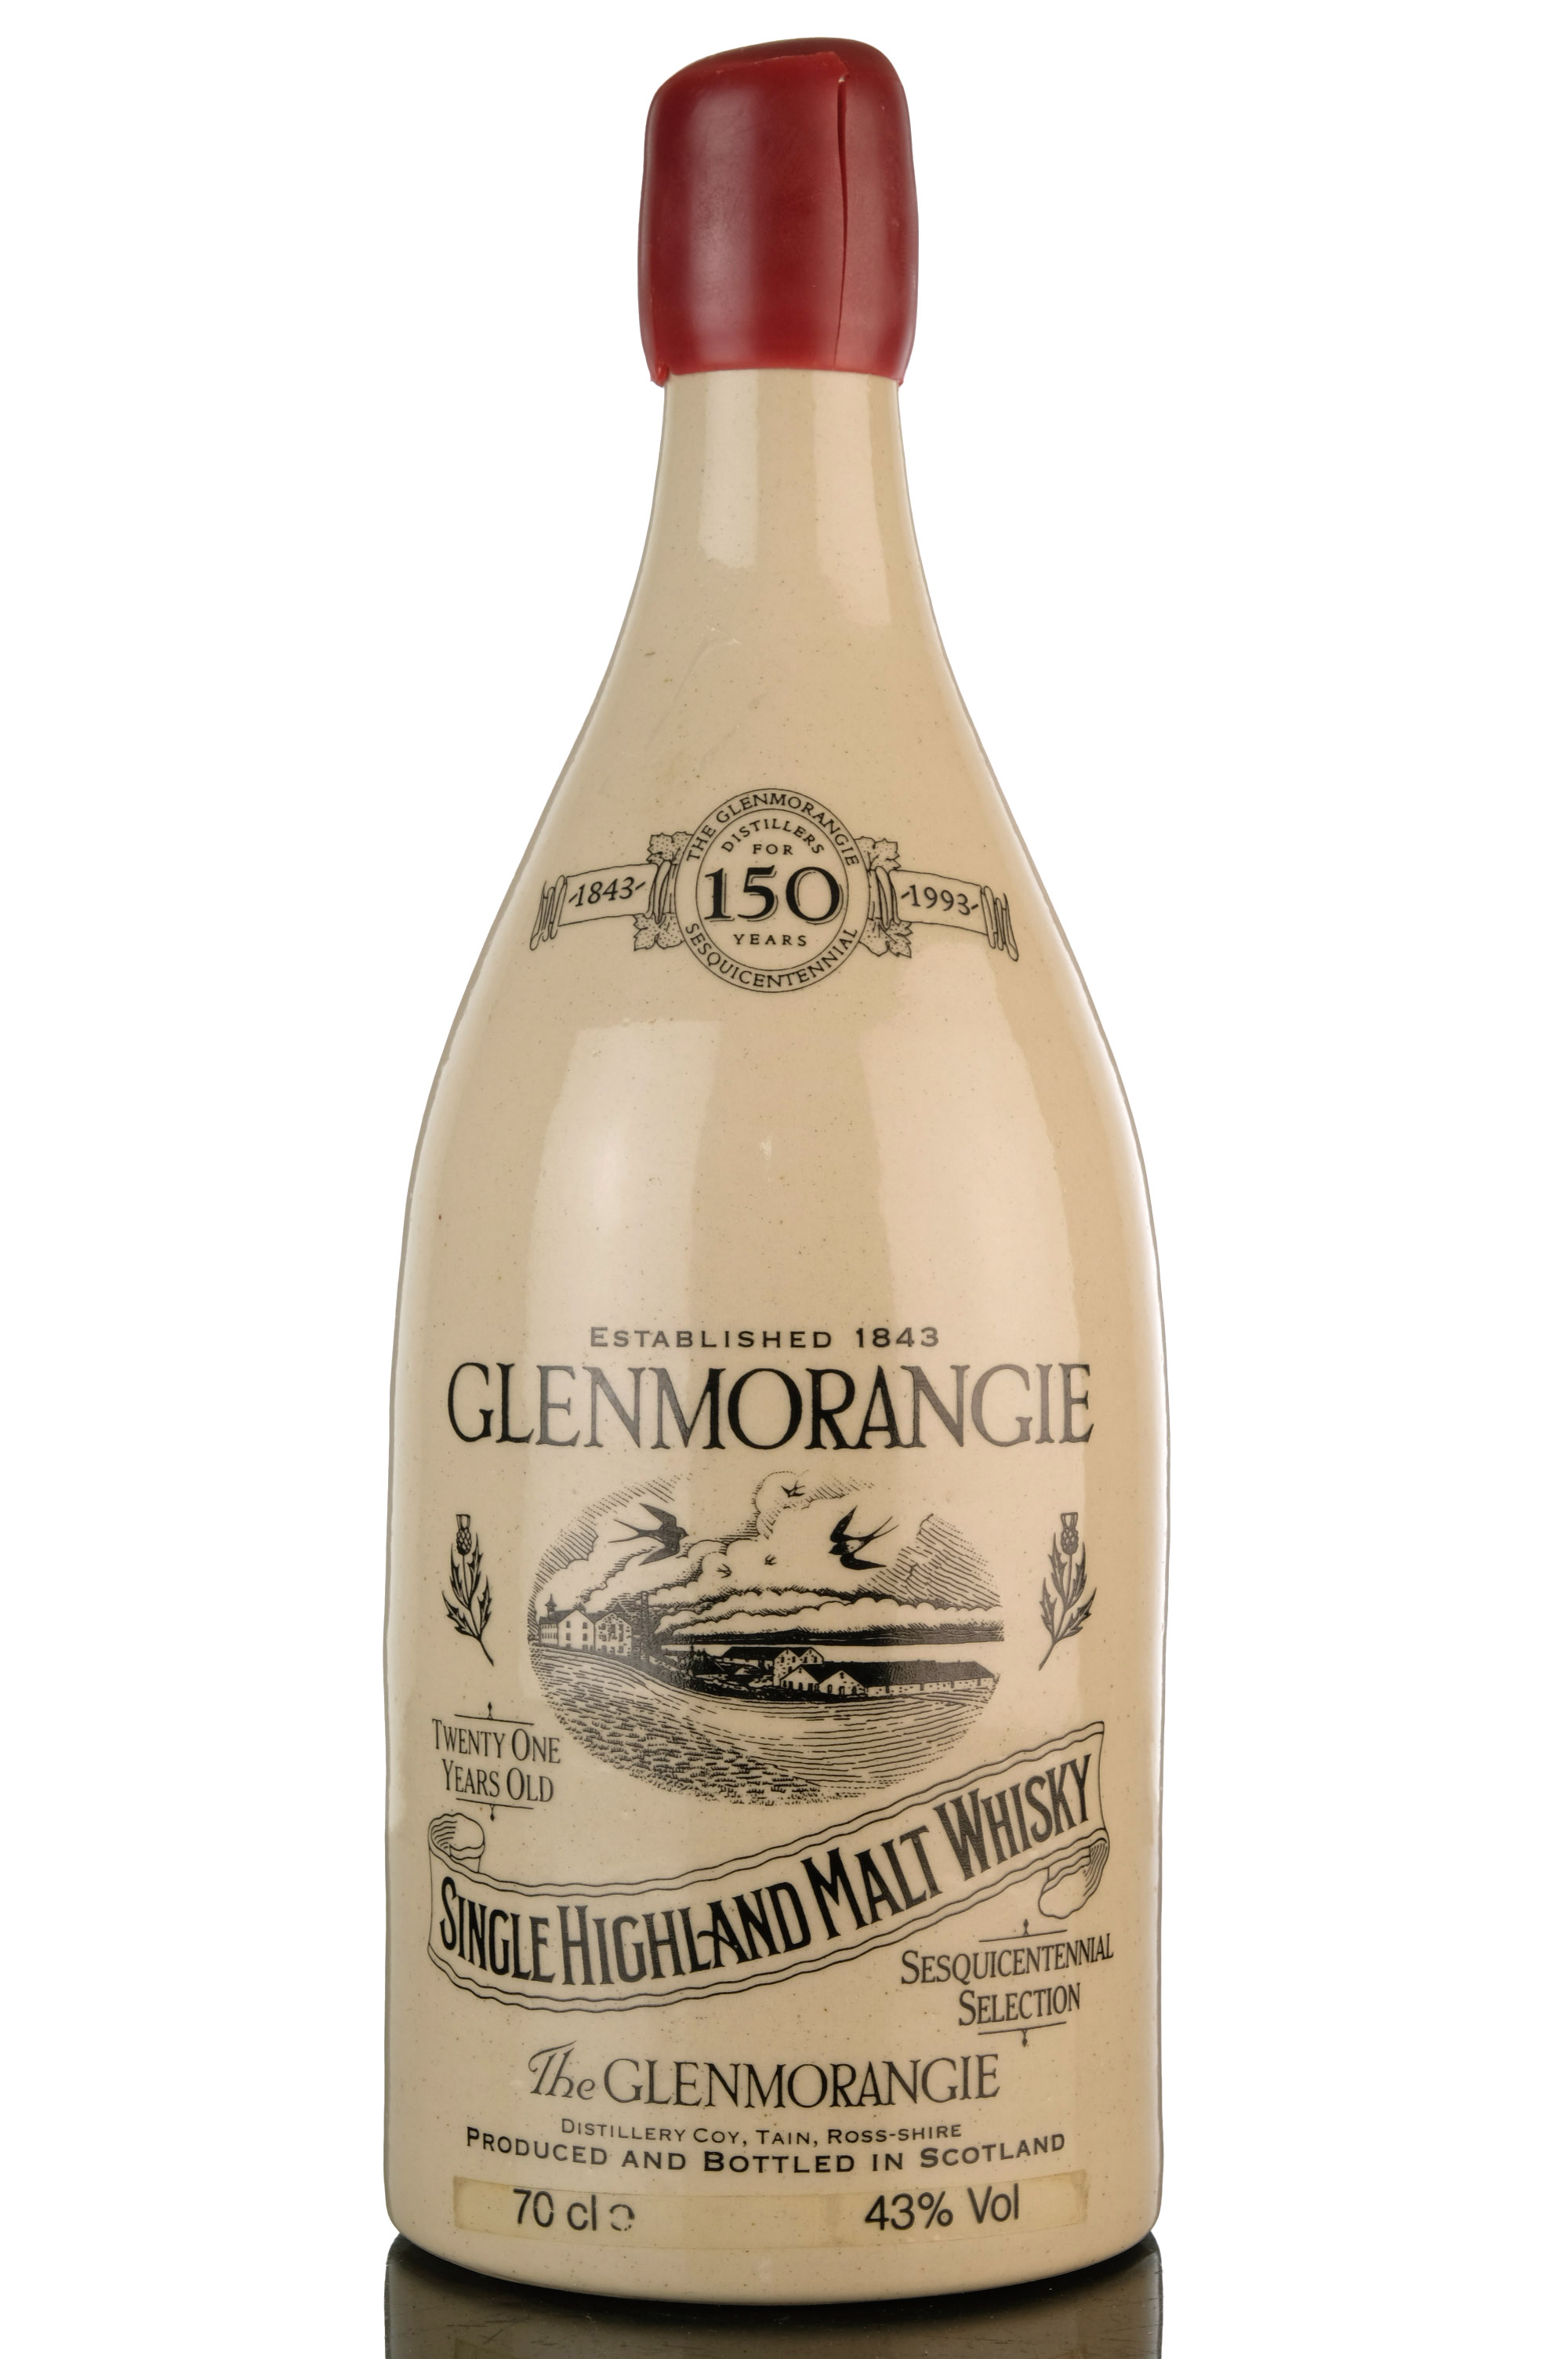 Glenmorangie 21 Year Old - 150th Anniversary 1843-1993